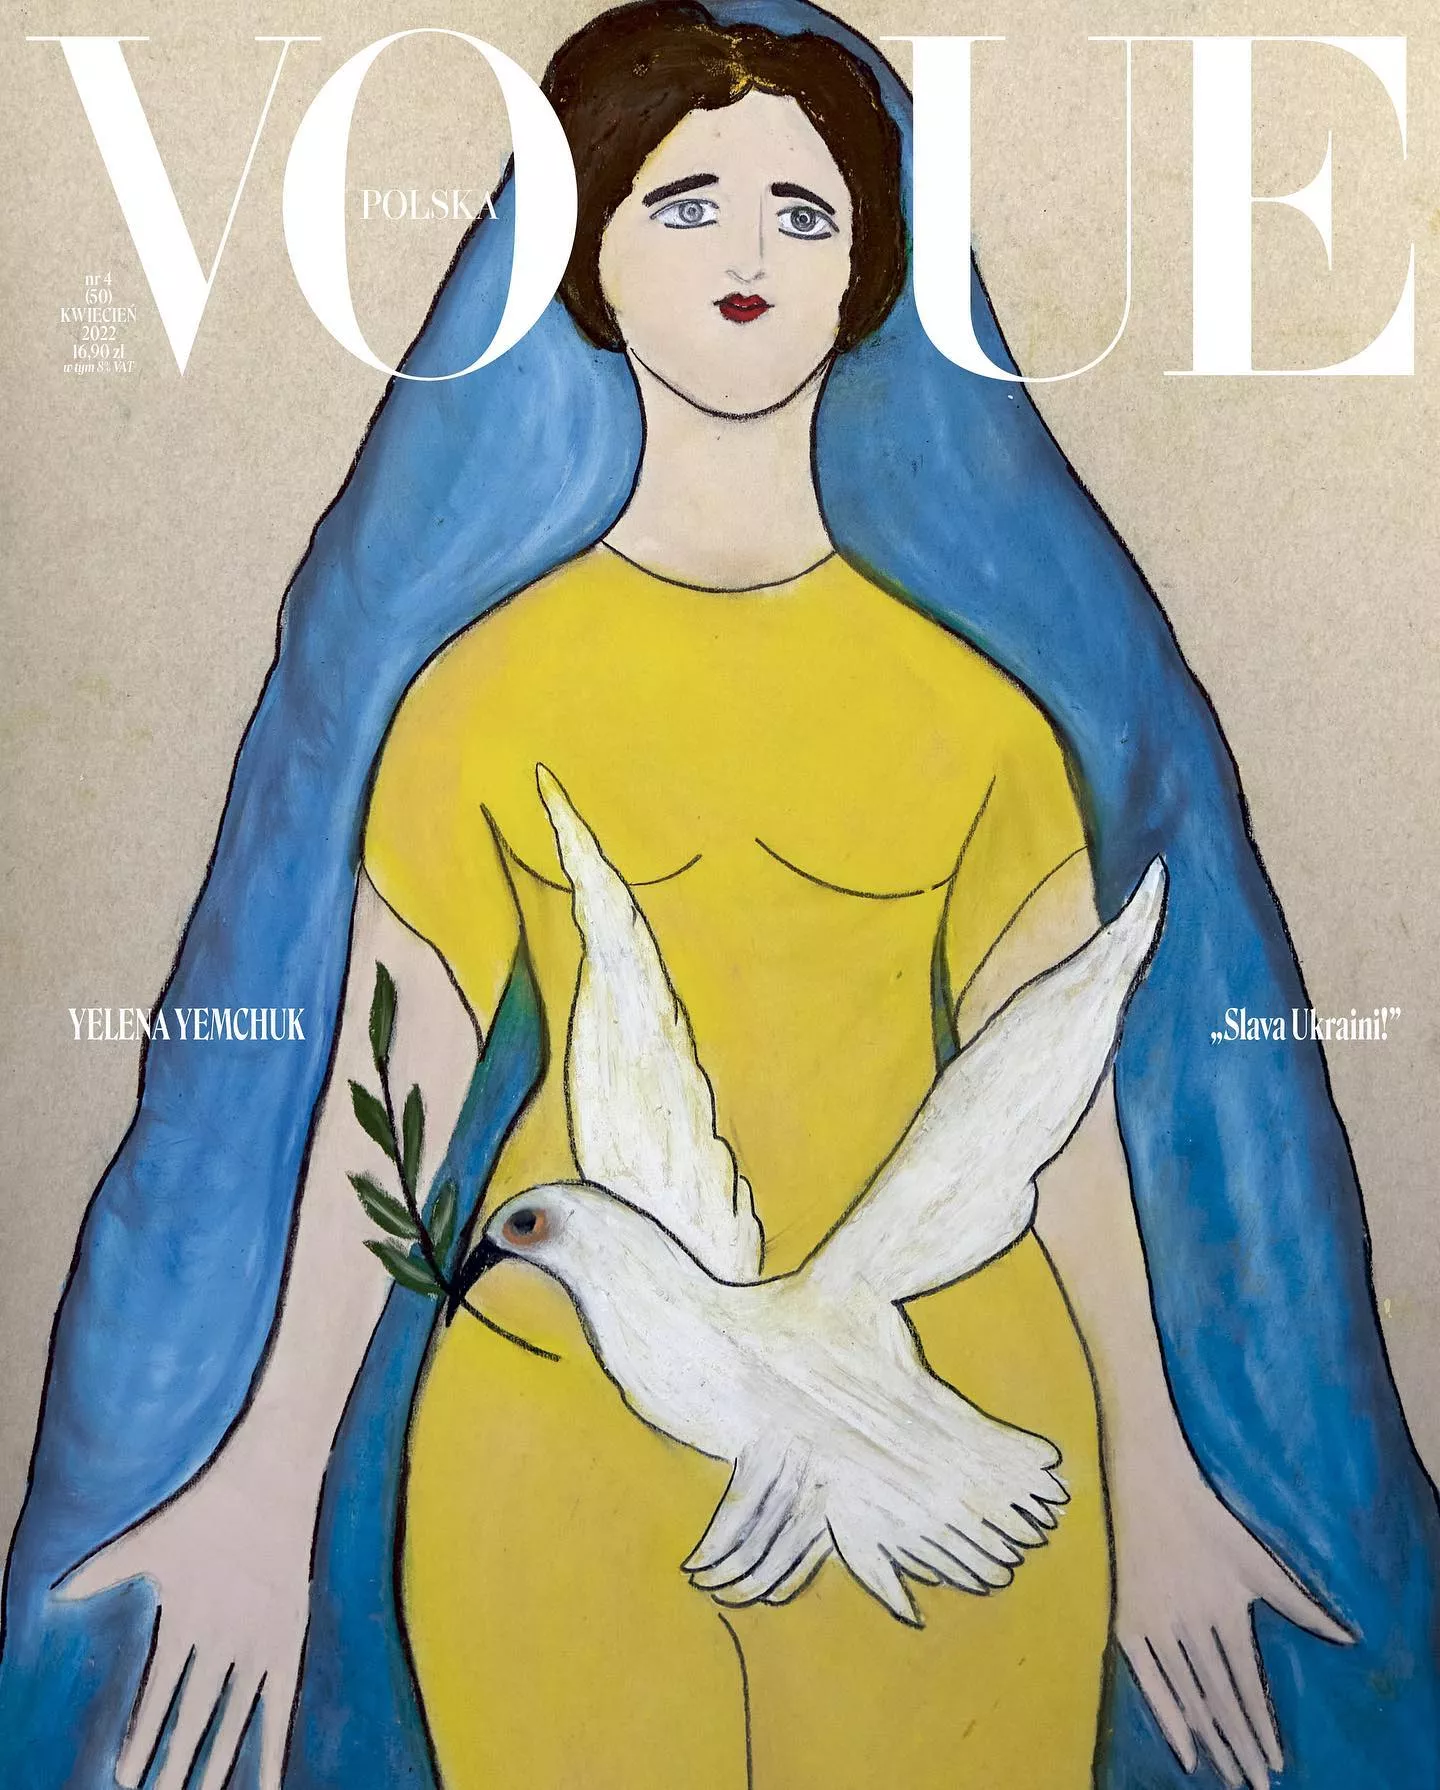 Нова обкладинка польського Vogue, присвячена Україні